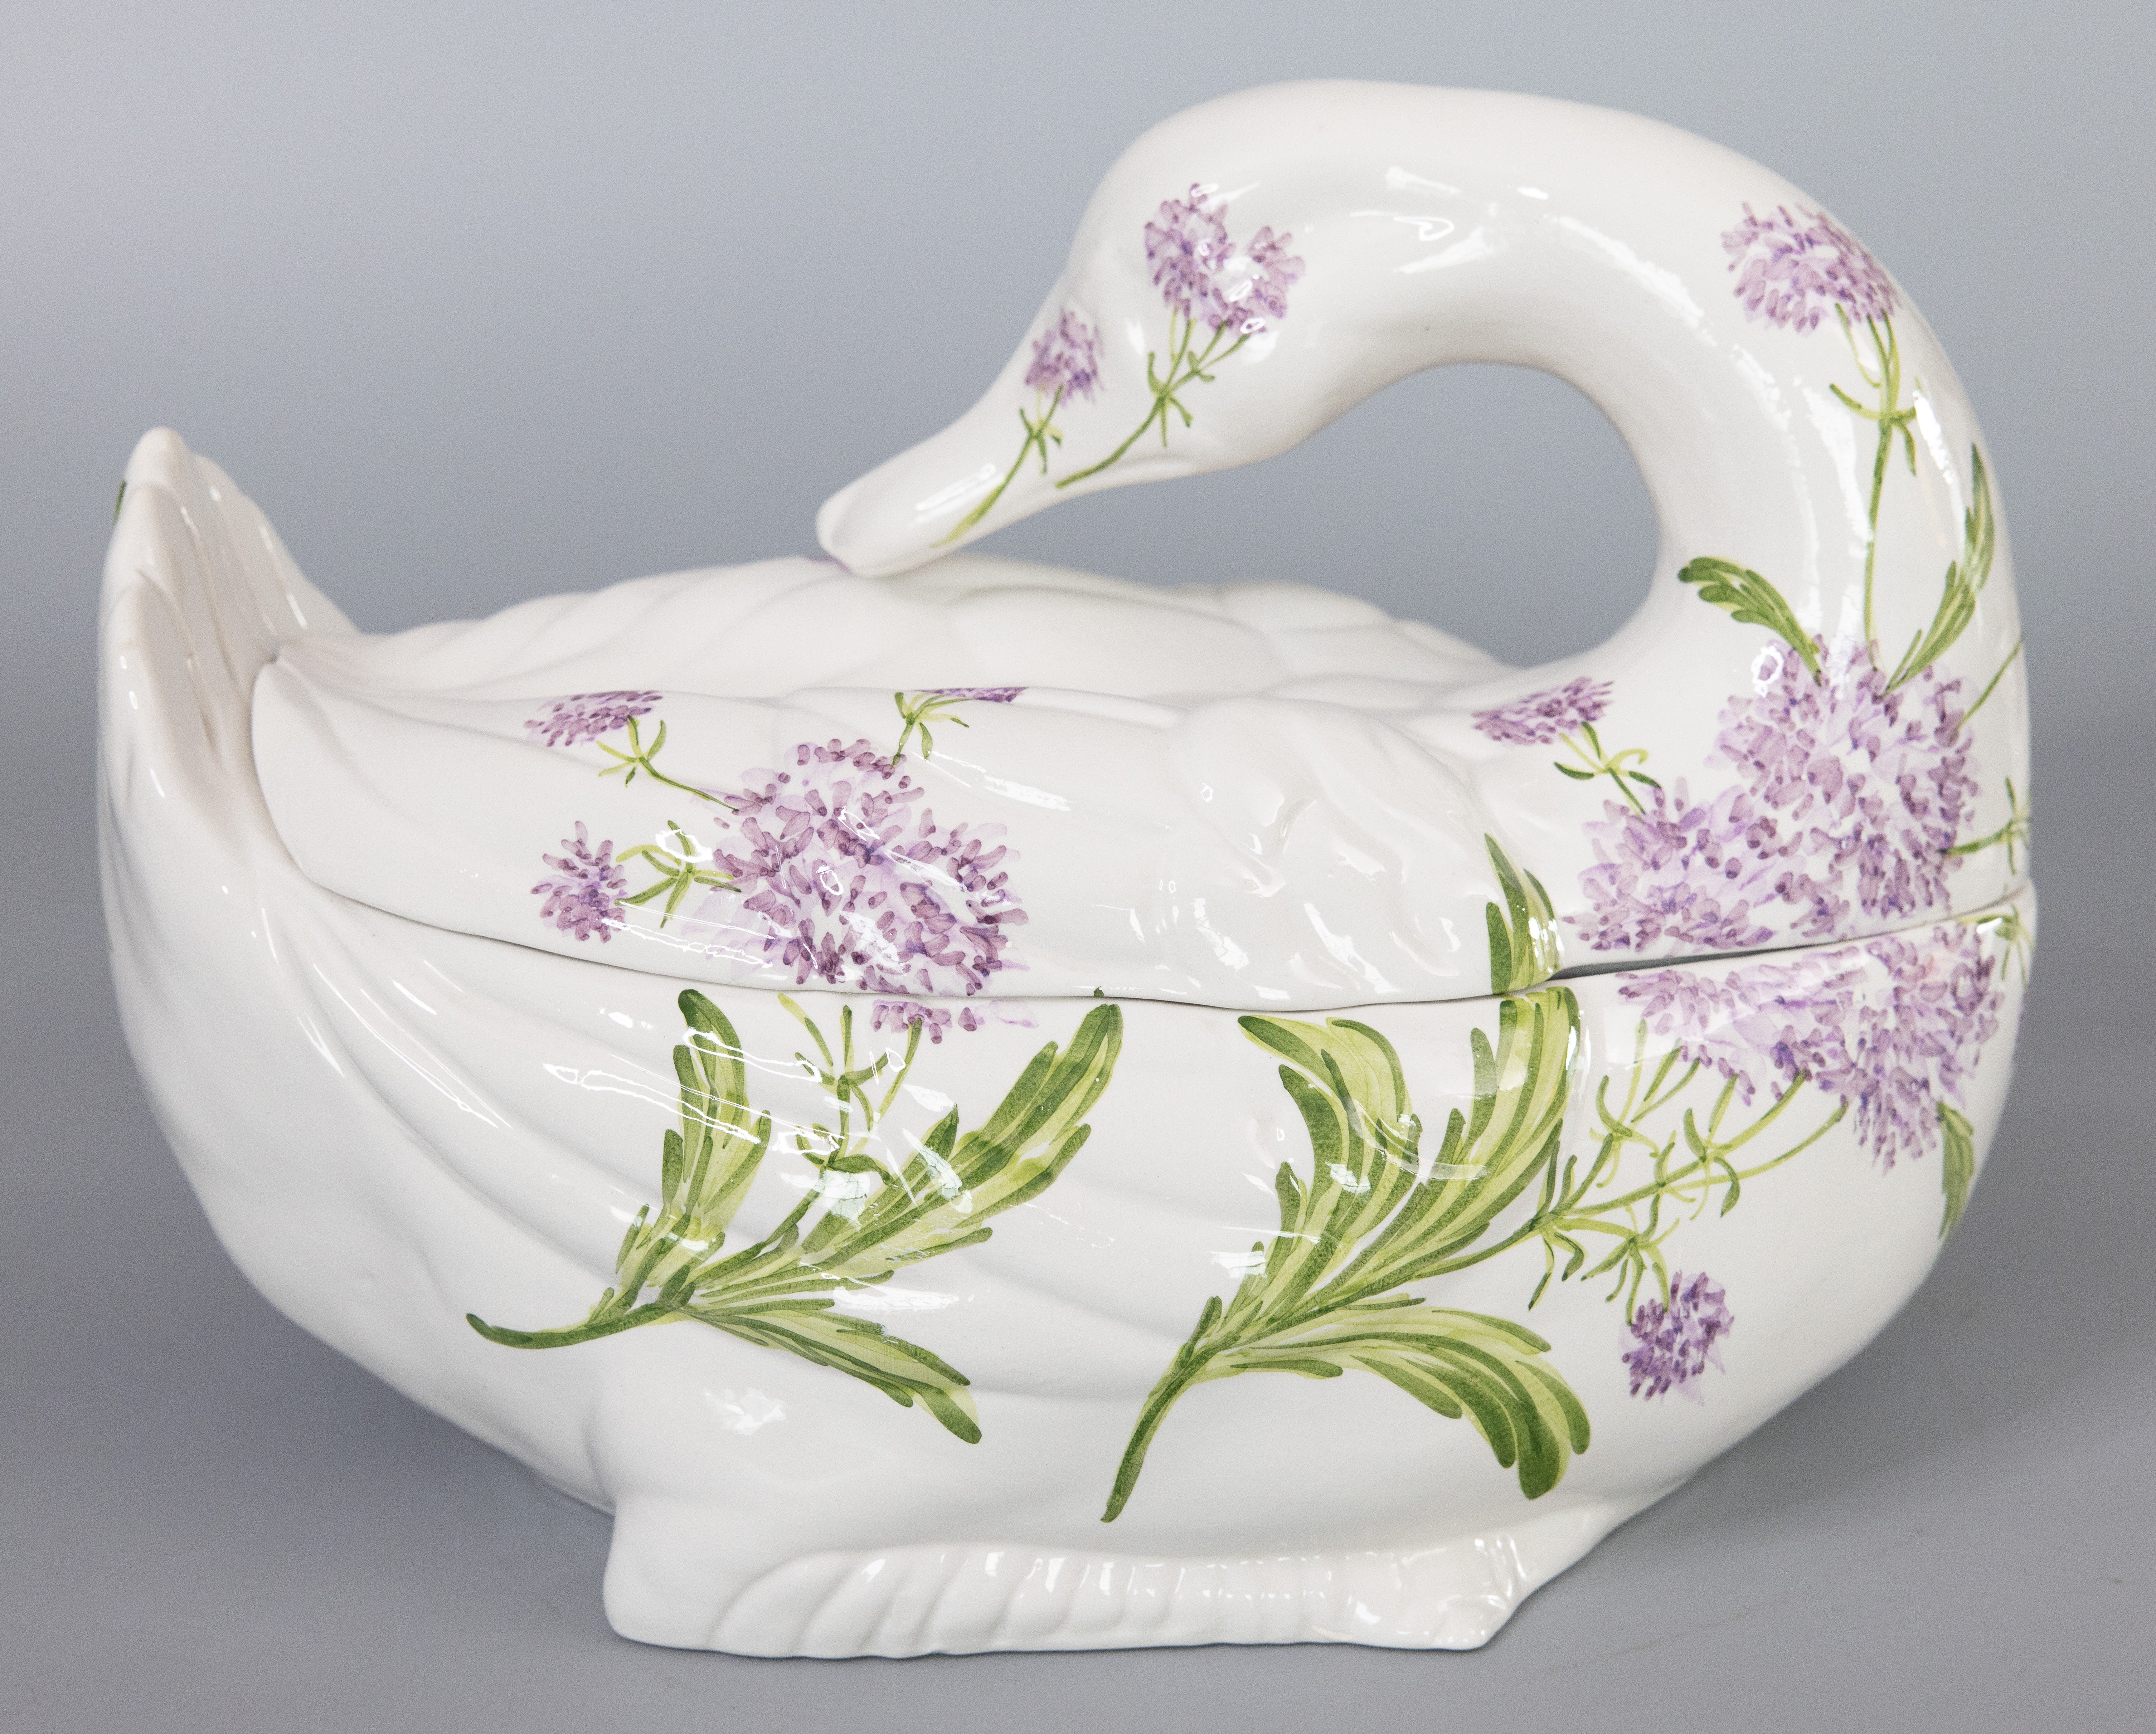 Eine schöne italienische Keramik Schwan Blumen Suppenterrine. Herstellermarke auf der Rückseite. Diese prächtige Terrine hat die Form eines anmutigen Schwans mit wunderschönen handgemalten Blumen. Er eignet sich perfekt zum Servieren oder zum